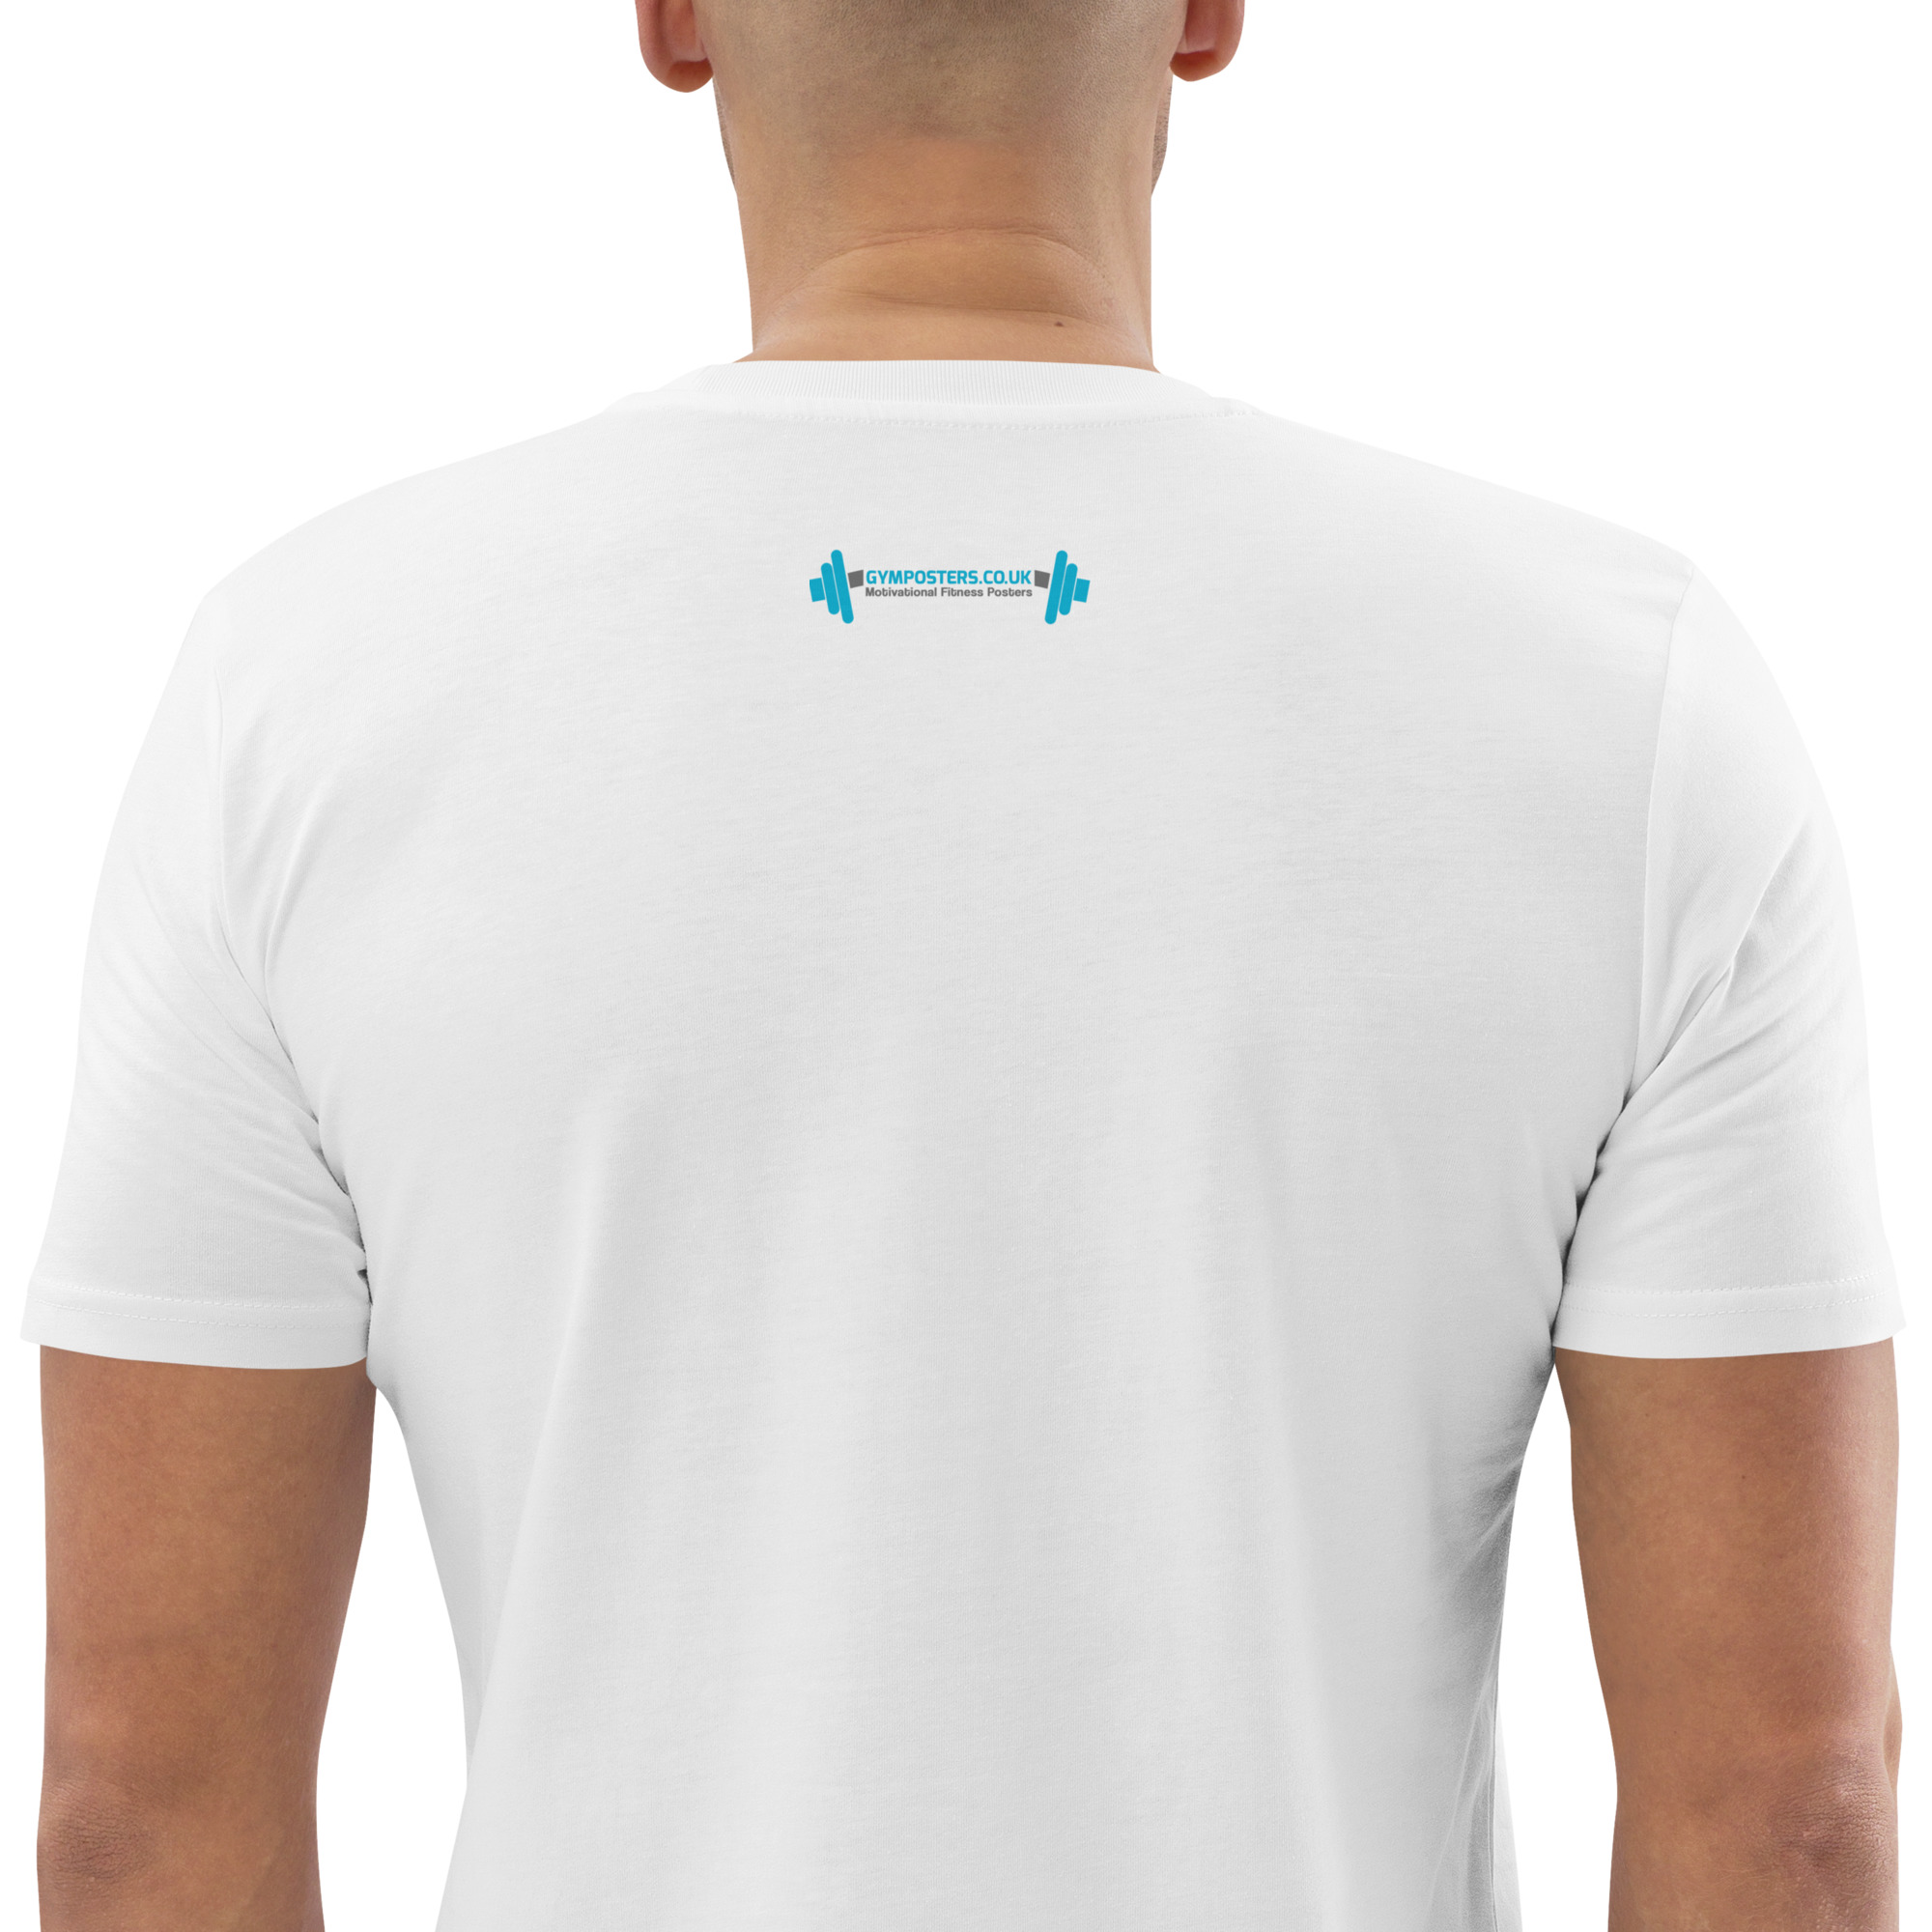 unisex-organic-cotton-t-shirt-white-zoomed-in-2-6578476c3e8f1.jpg